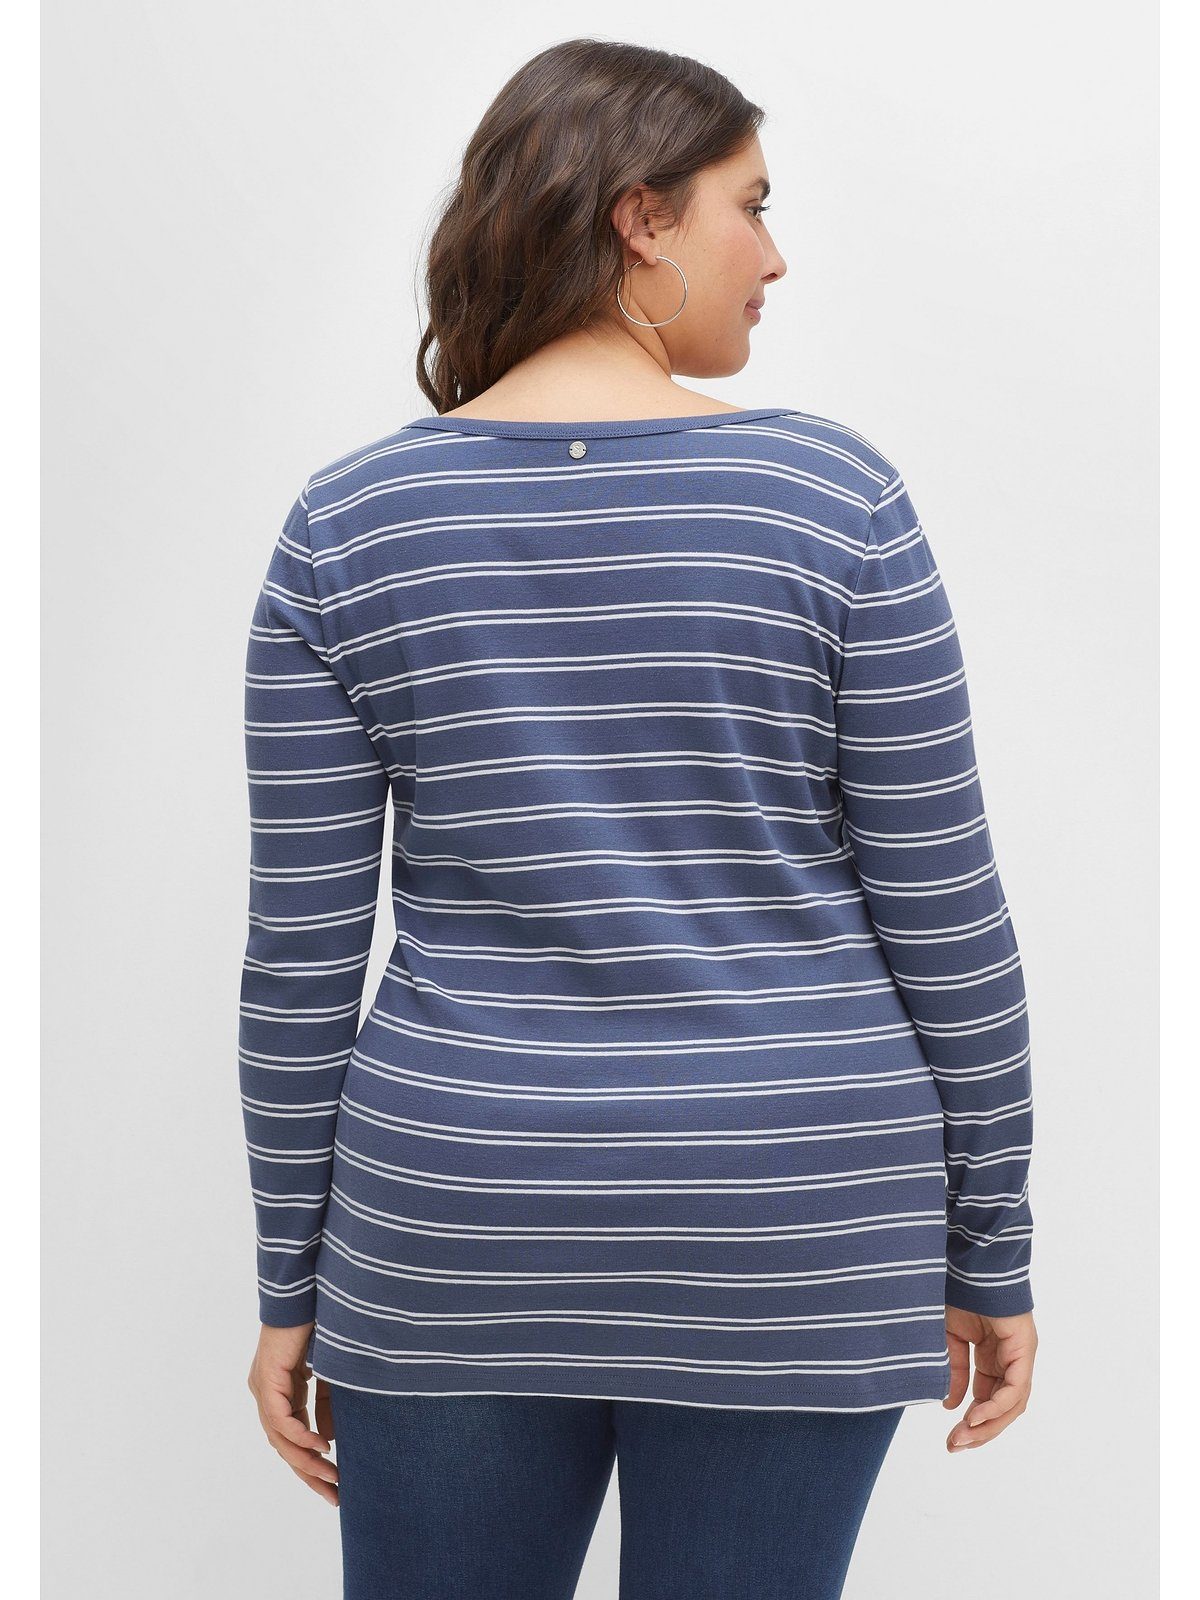 Langarmshirt mit Rippqualität in Große indigo-weiß Streifen, Sheego Größen